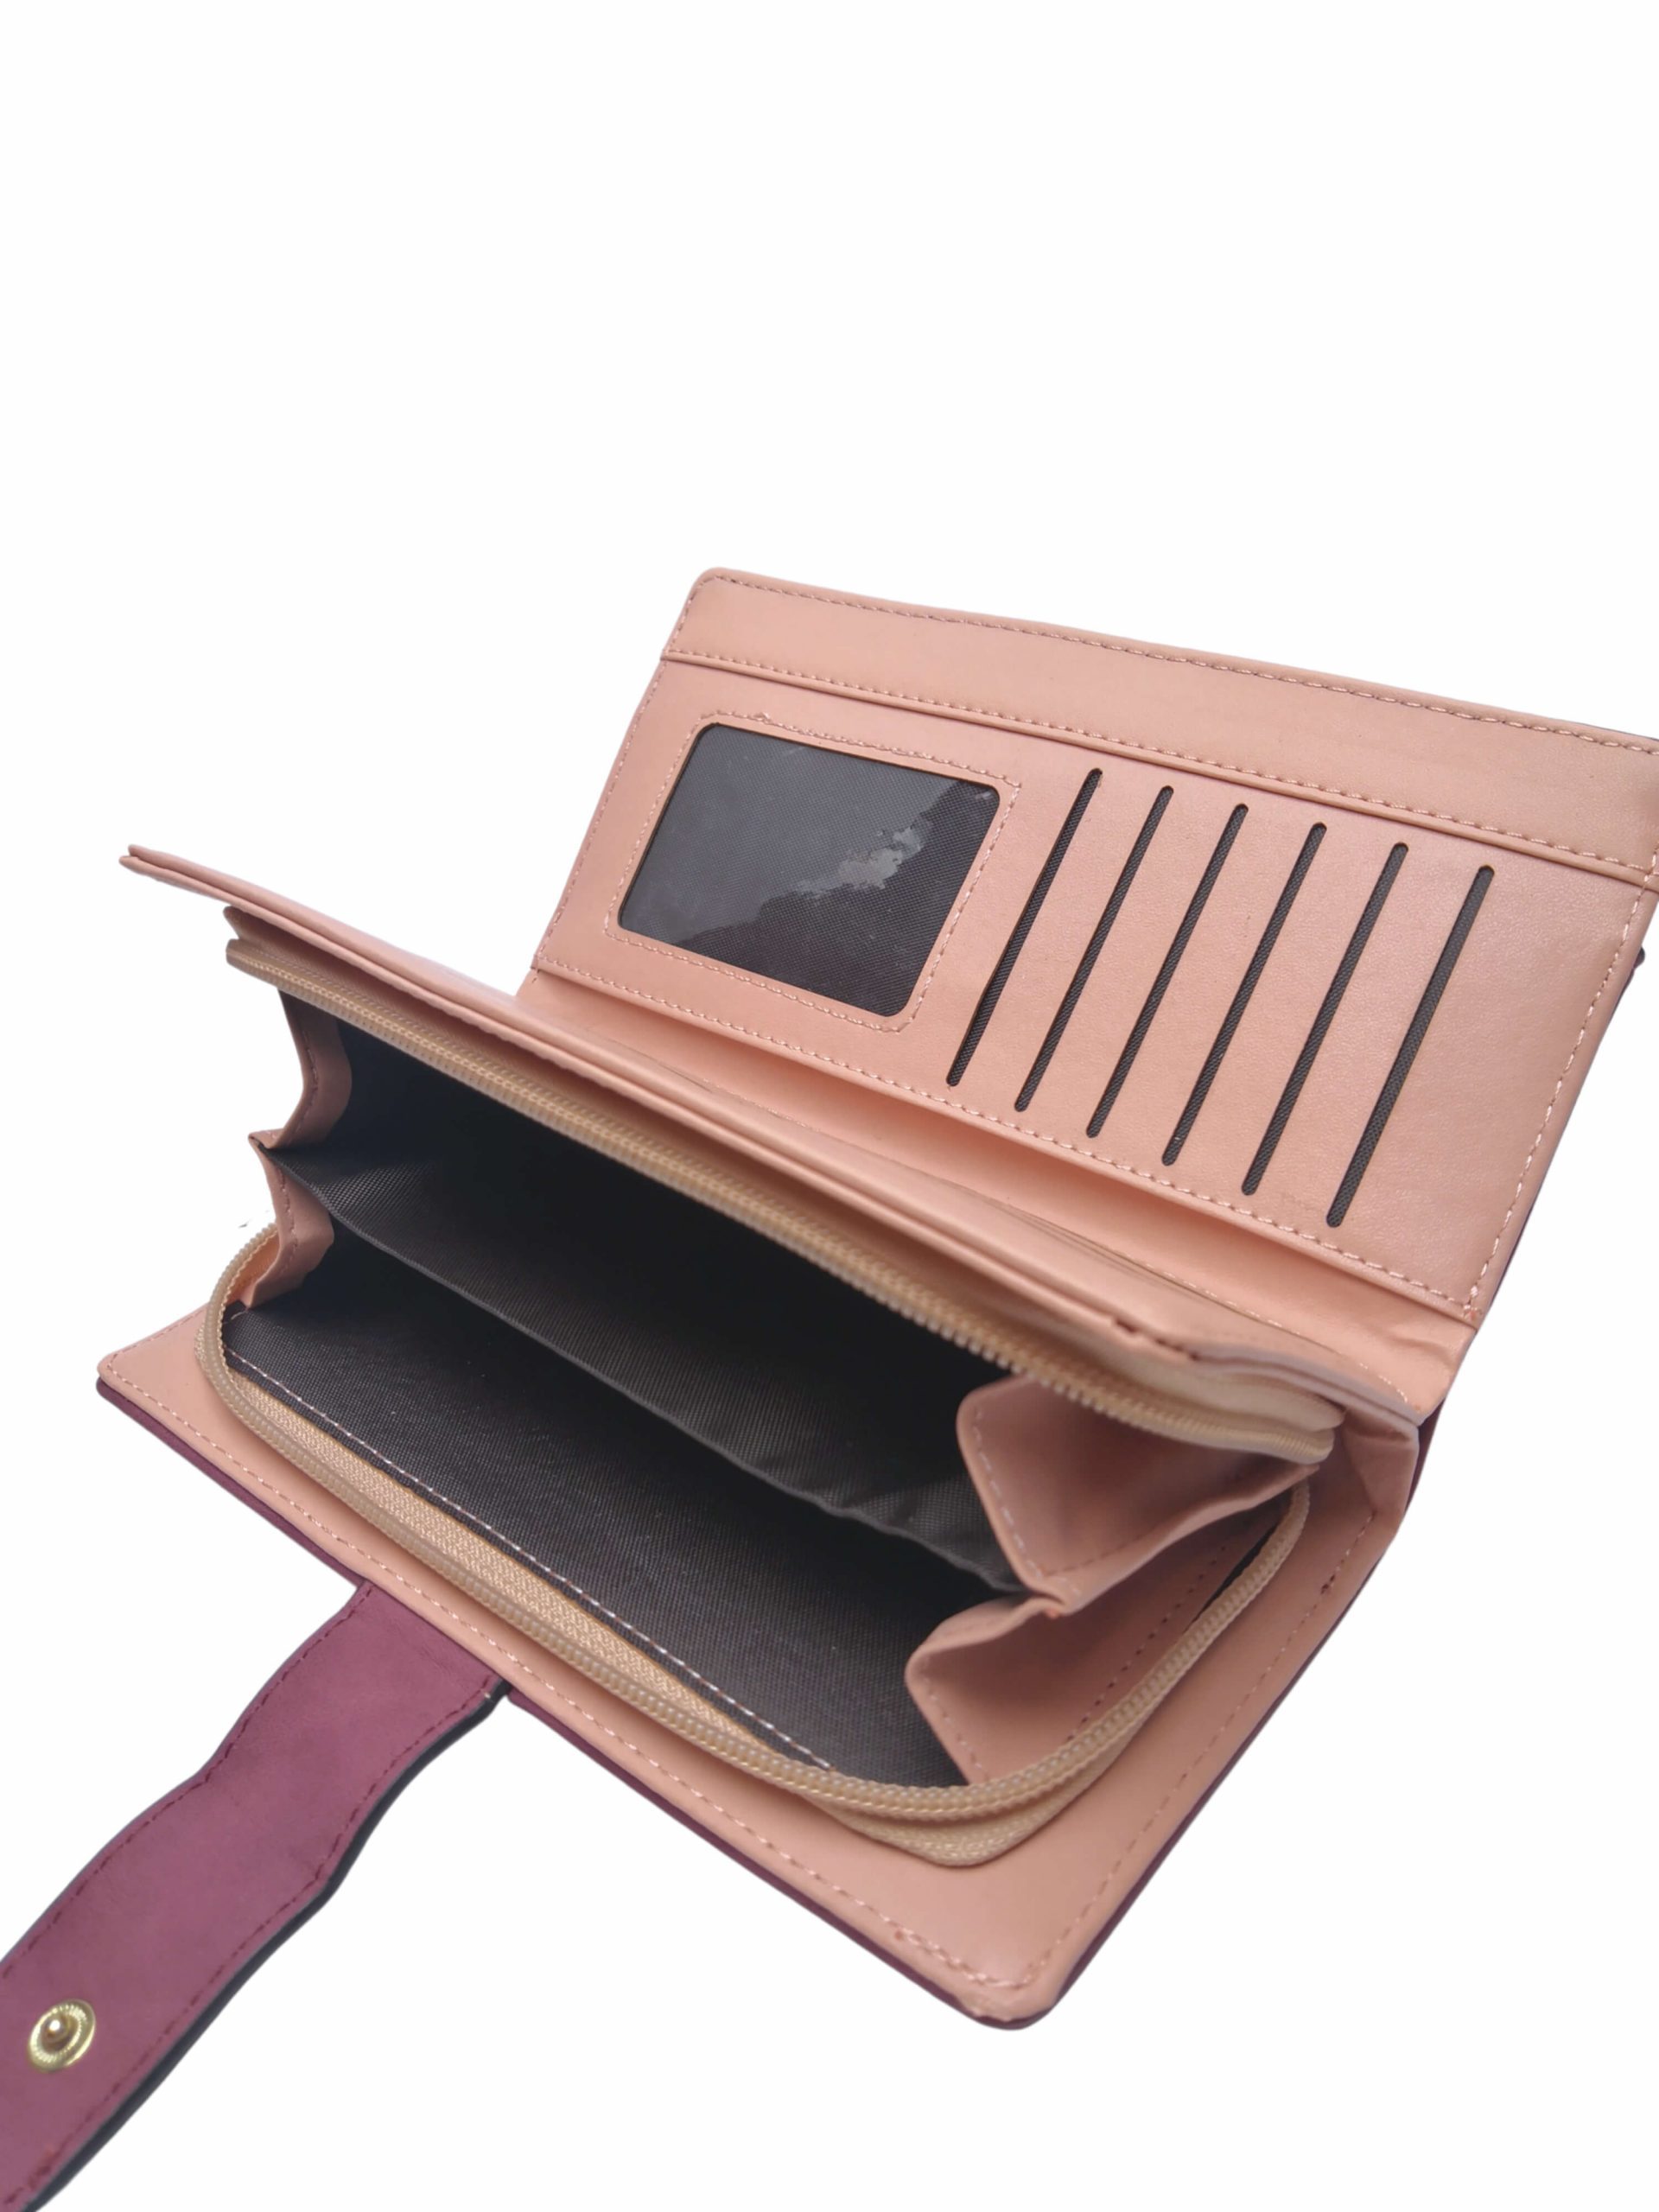 Vínová dámská peněženka z broušené eko kůže, New Berry, DX-11, vnitřní uspořádání peněženky s rozepnutou kapsou